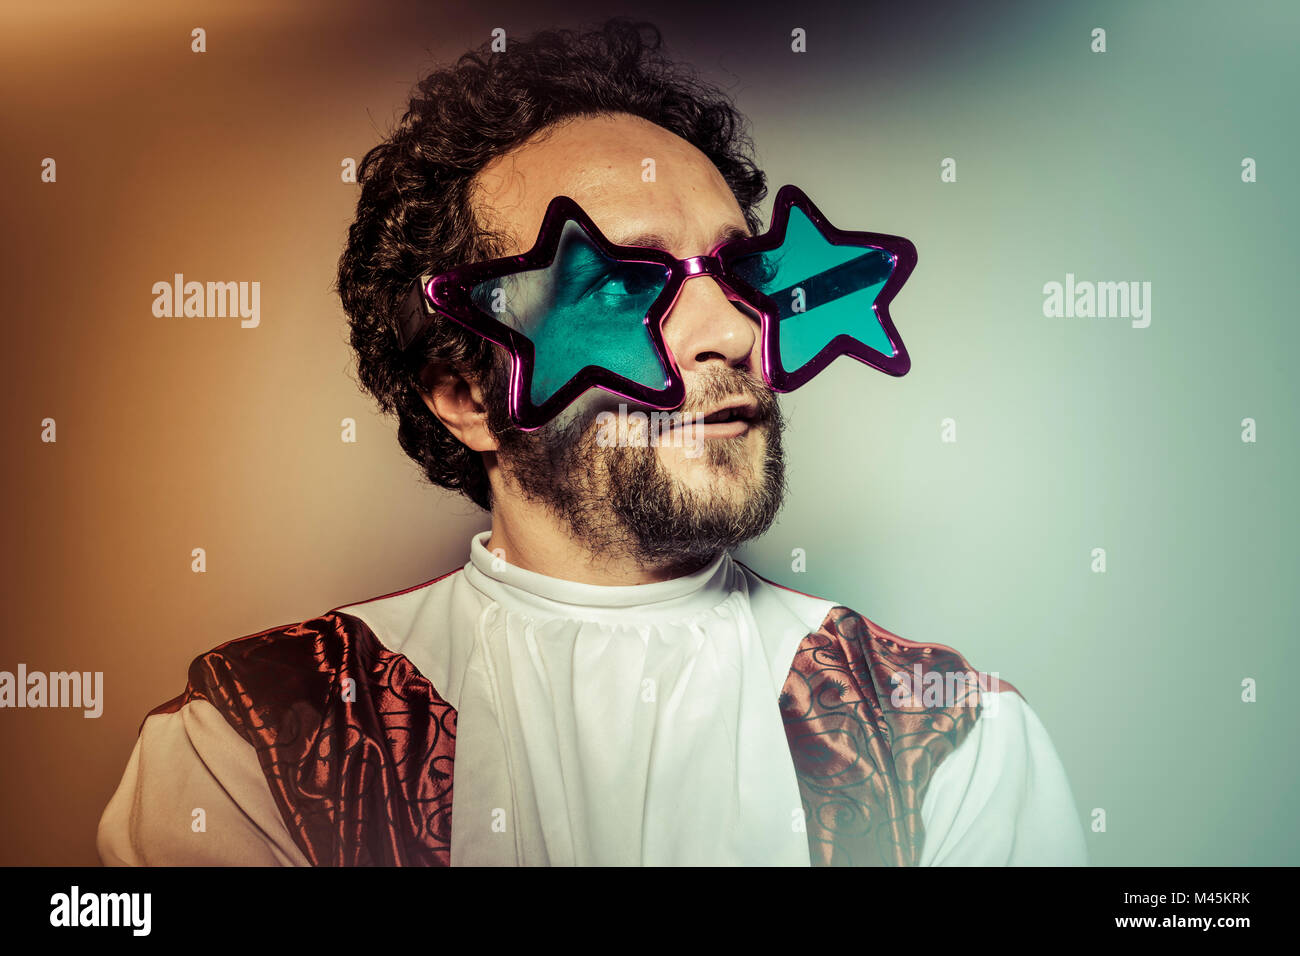 Mann Mit Brille Und Dummes Gesicht Grosse Stars Selfie Stockfotografie Alamy